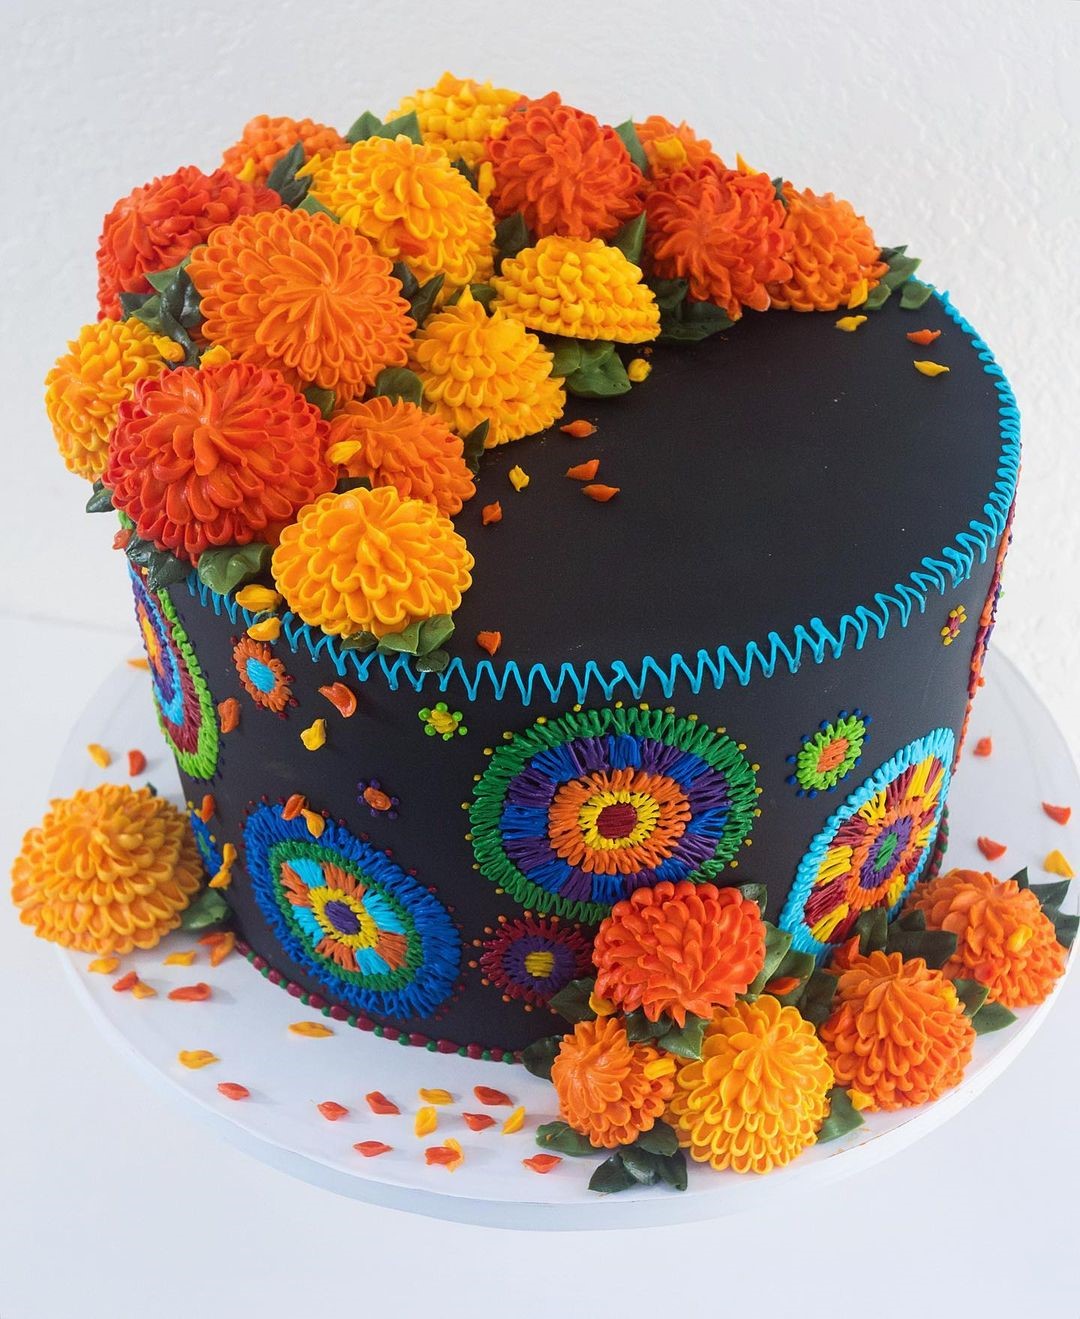 Сладкие шедевры, словно вышитые ниткой: торты в виде кактусов, суккулентов и цветов от калифорнийской мастерицы